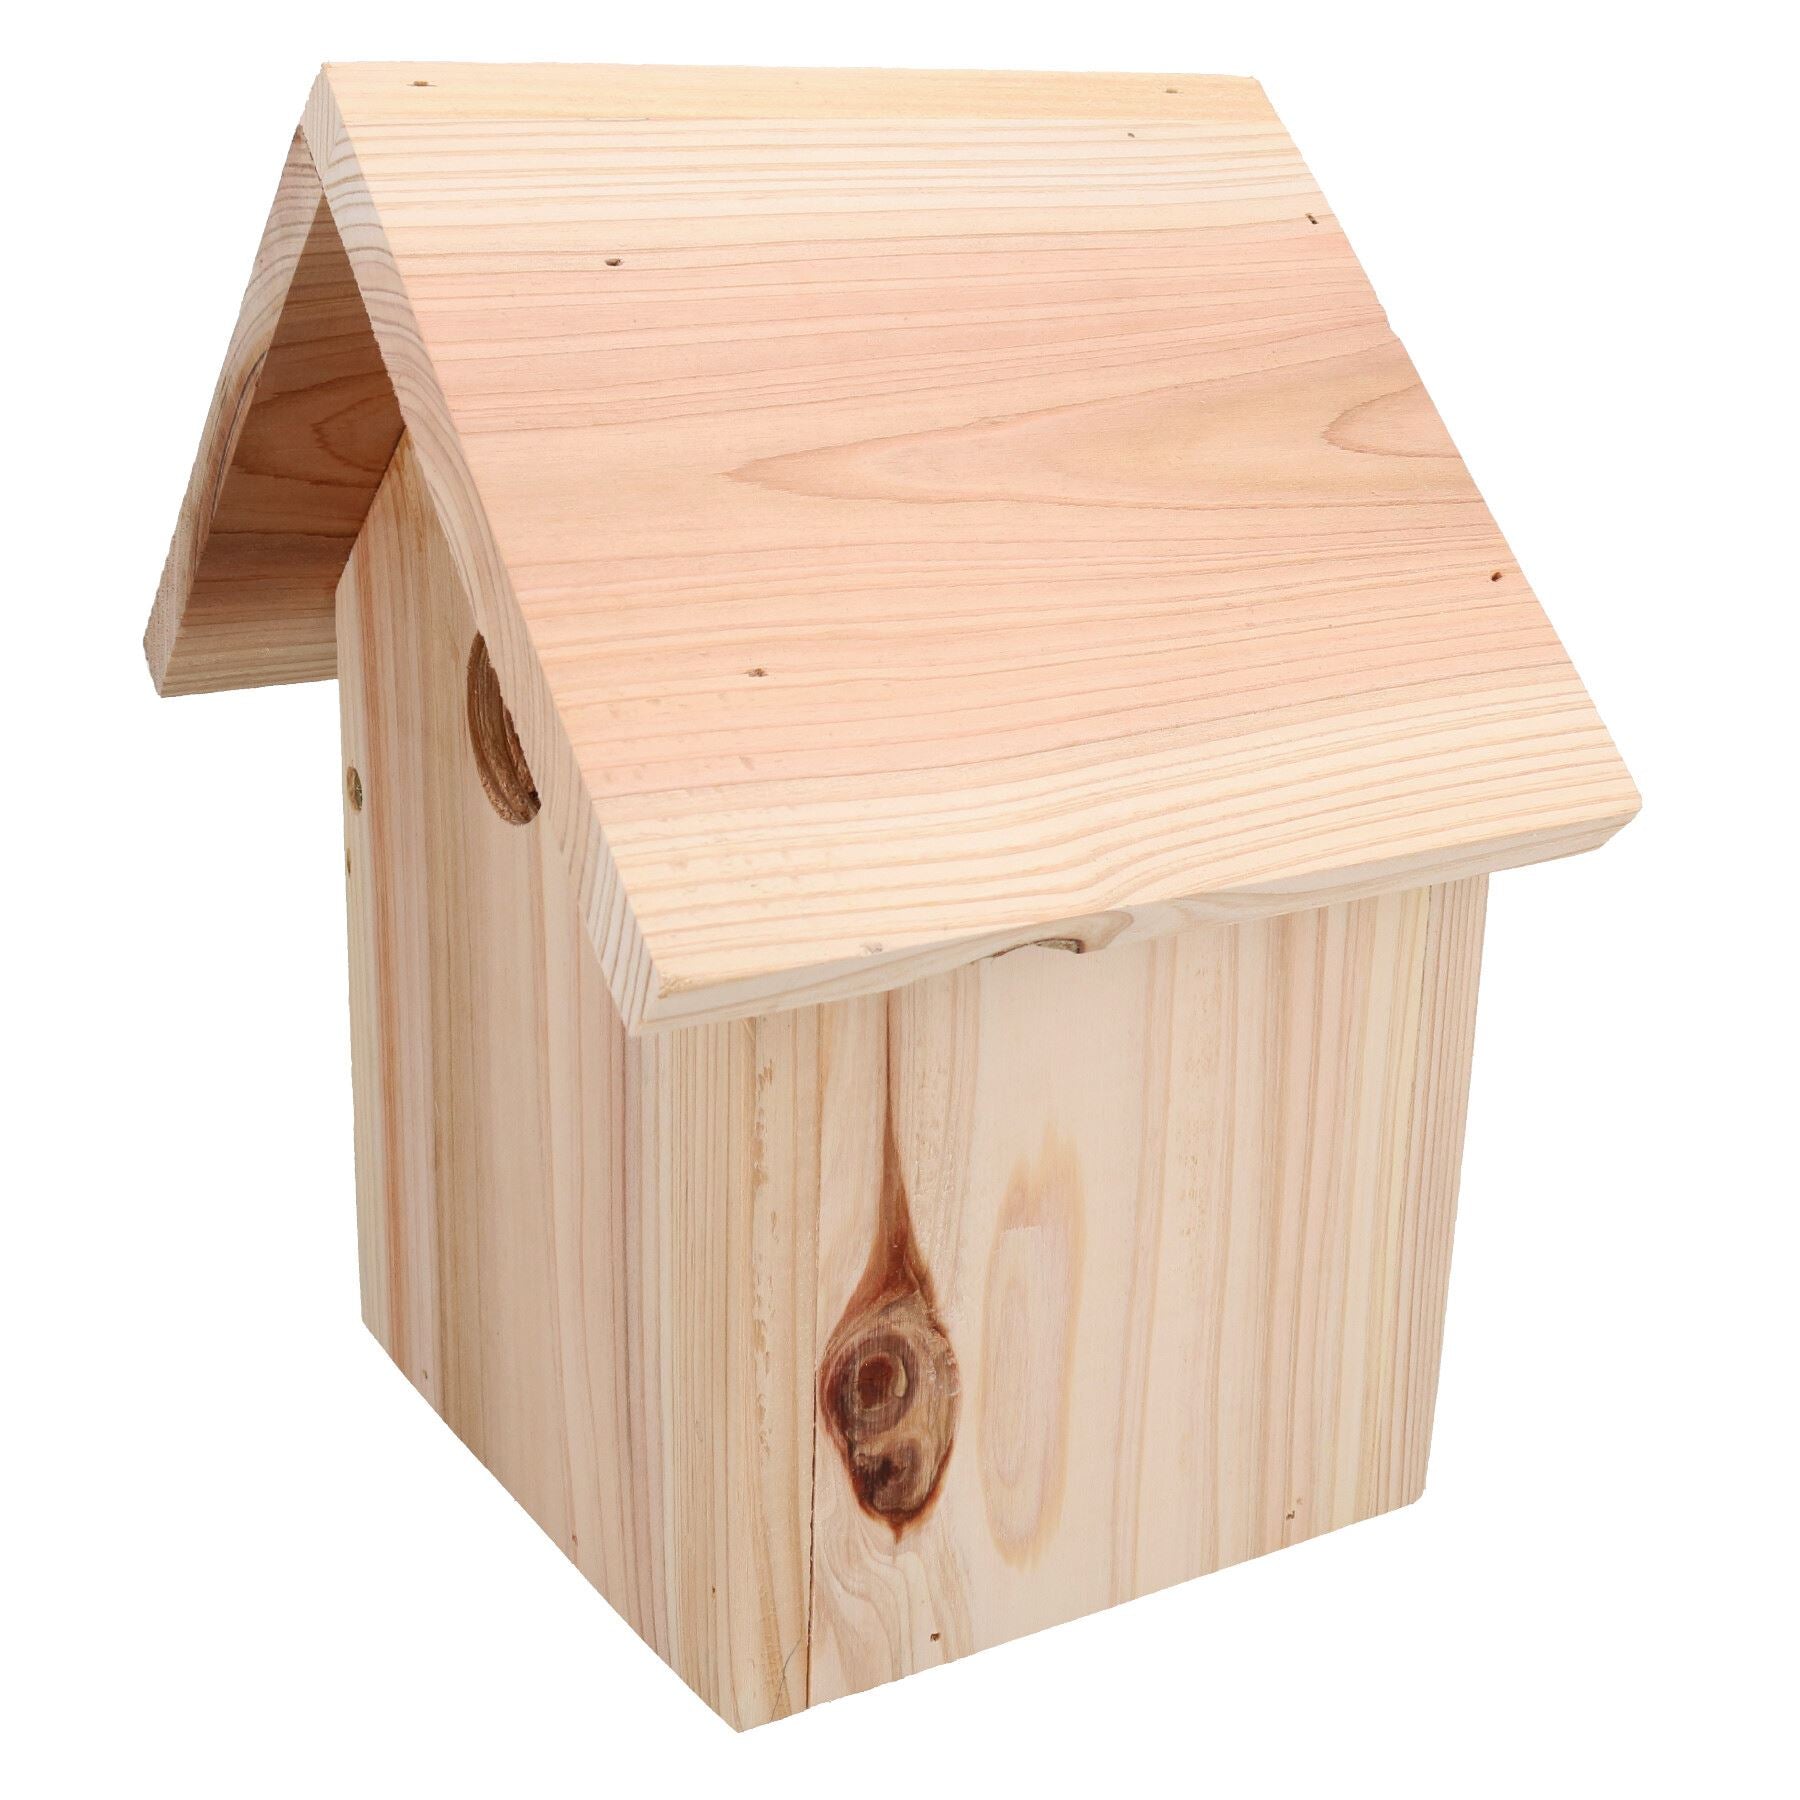 Quality Forest Nature Class Wooden Bird House Garden Nest Box Apex 32mm Hole